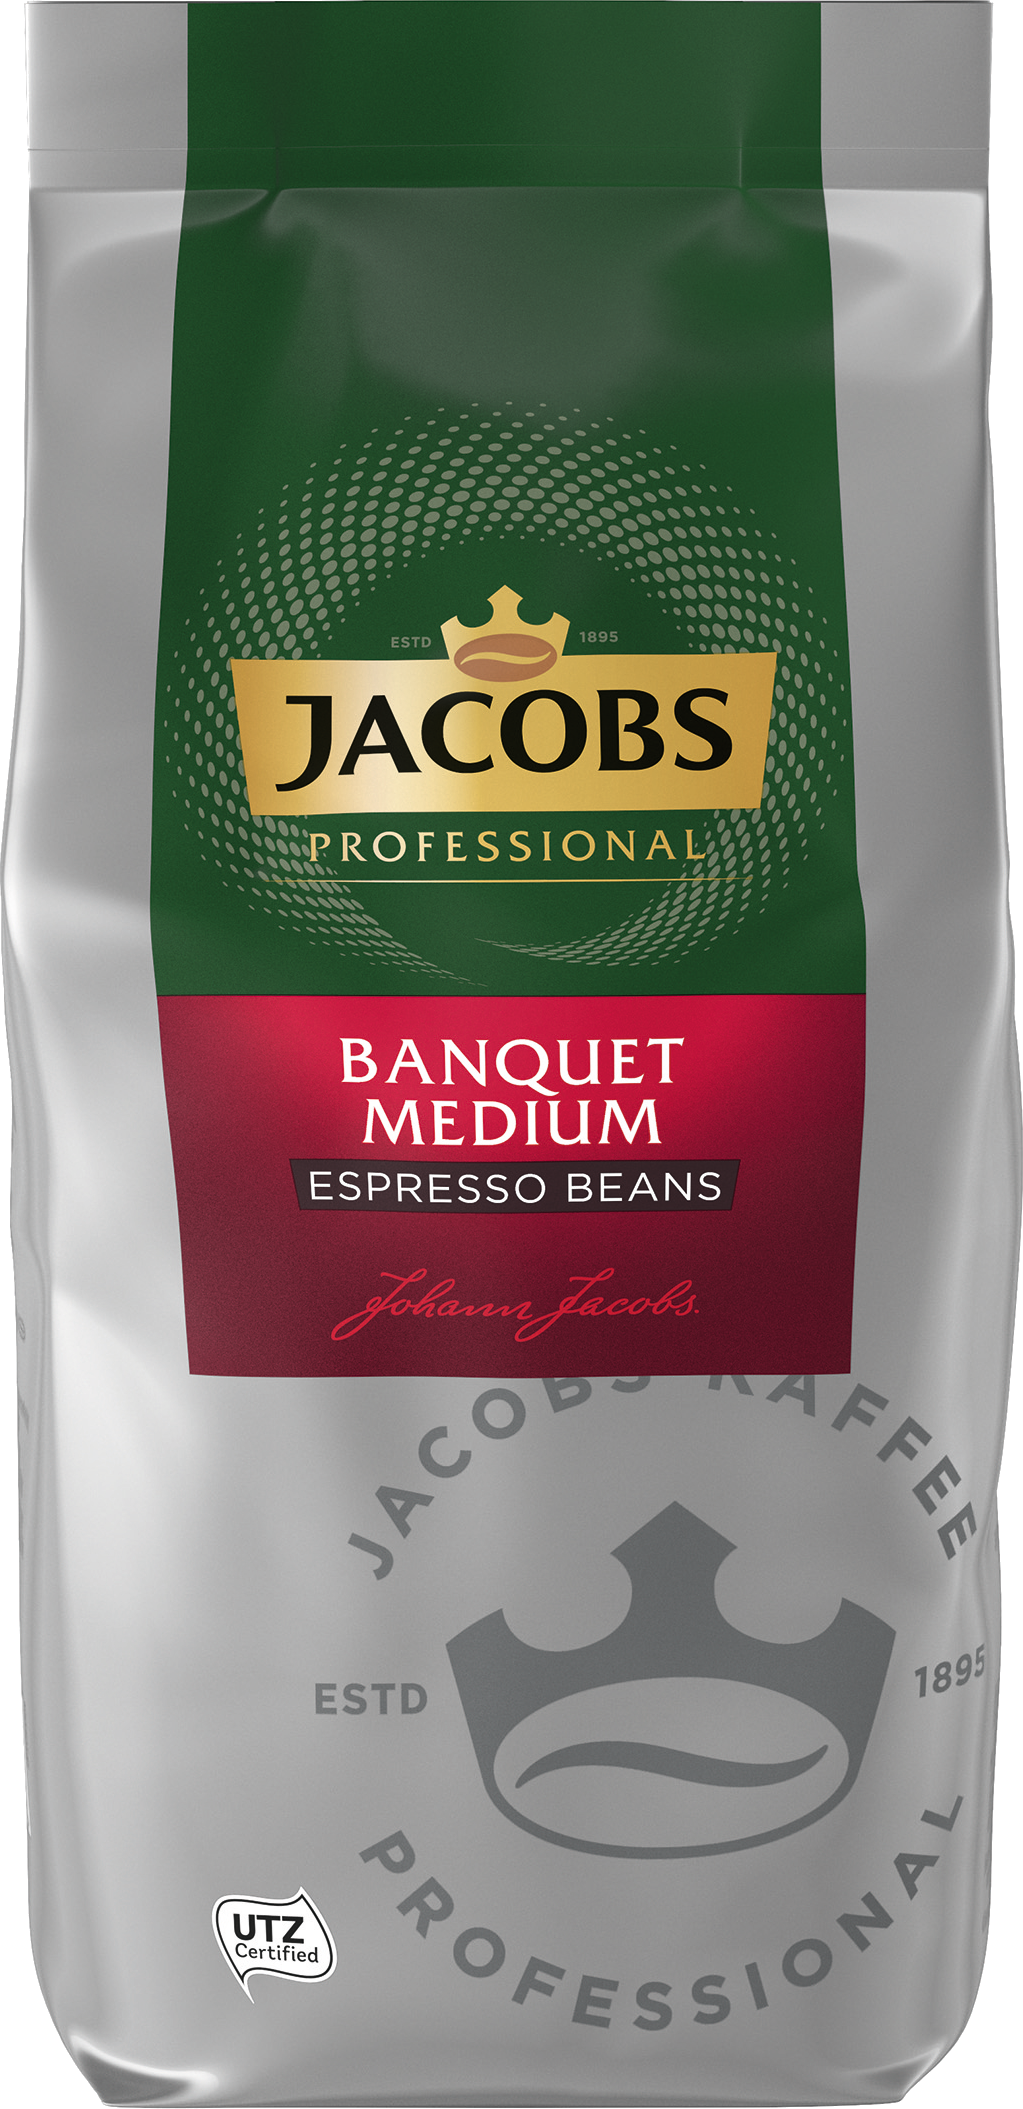 Jacobs Banquet Medium Espresso